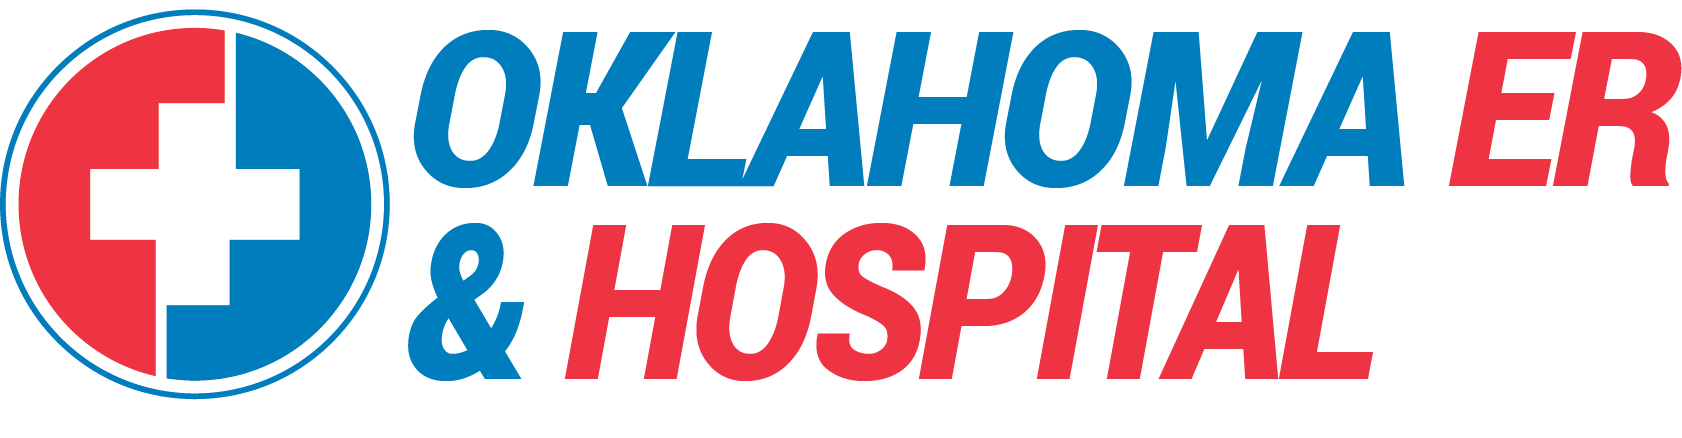 Oklahoma ER & Hospital Company Logo